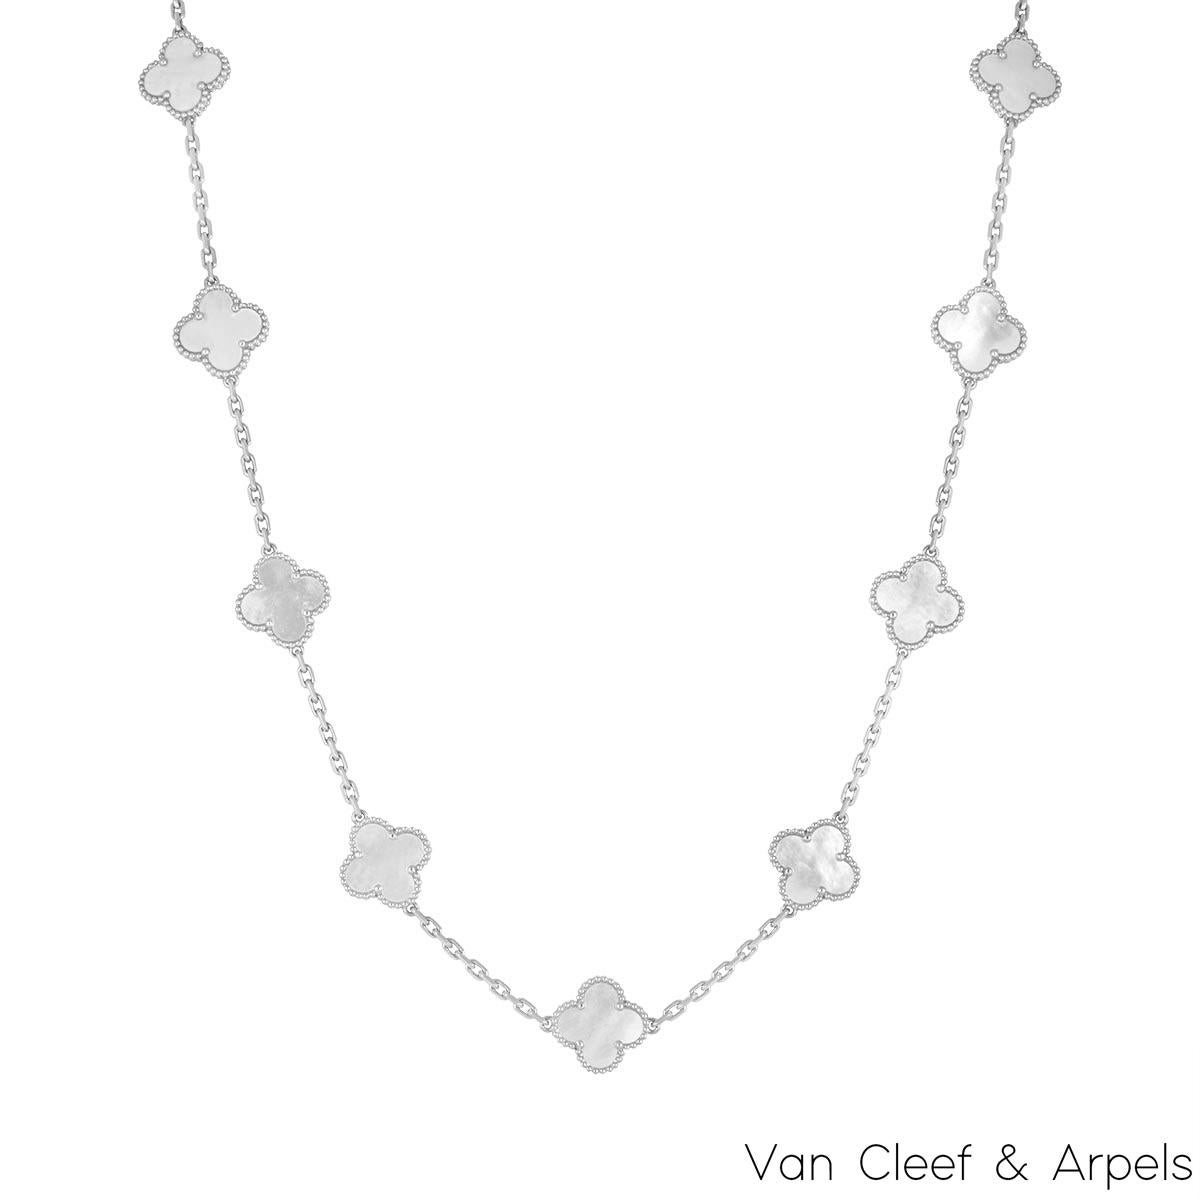 Magnifique collier en or blanc 18 carats en nacre de la collection Vintage Alhambra de Van Cleef & Arpels. Le collier comporte 20 motifs de trèfle emblématiques, chacun étant serti d'un bord perlé et d'une incrustation de nacre, le tout sur toute la